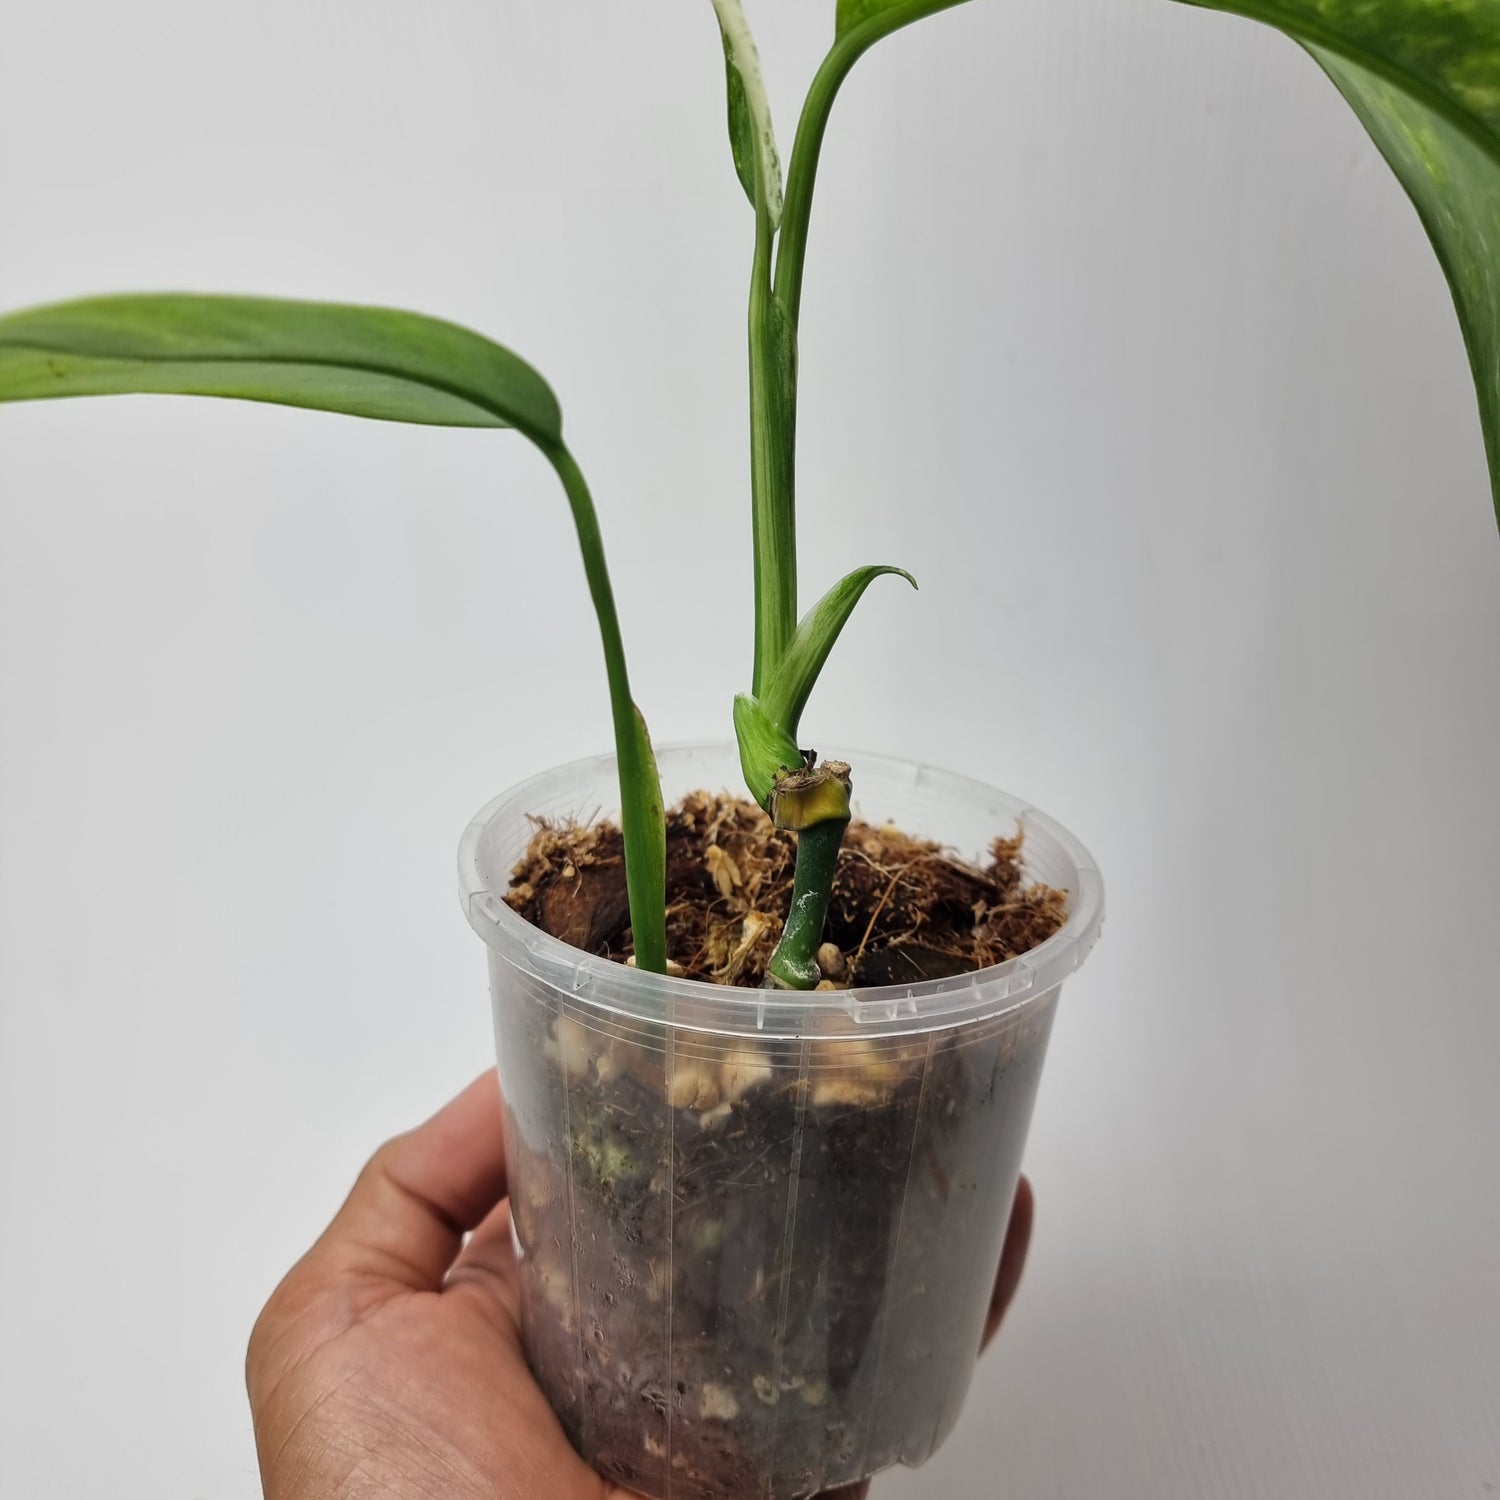 rare Variegated Epipremnum giganteum for sale in Perth Australia